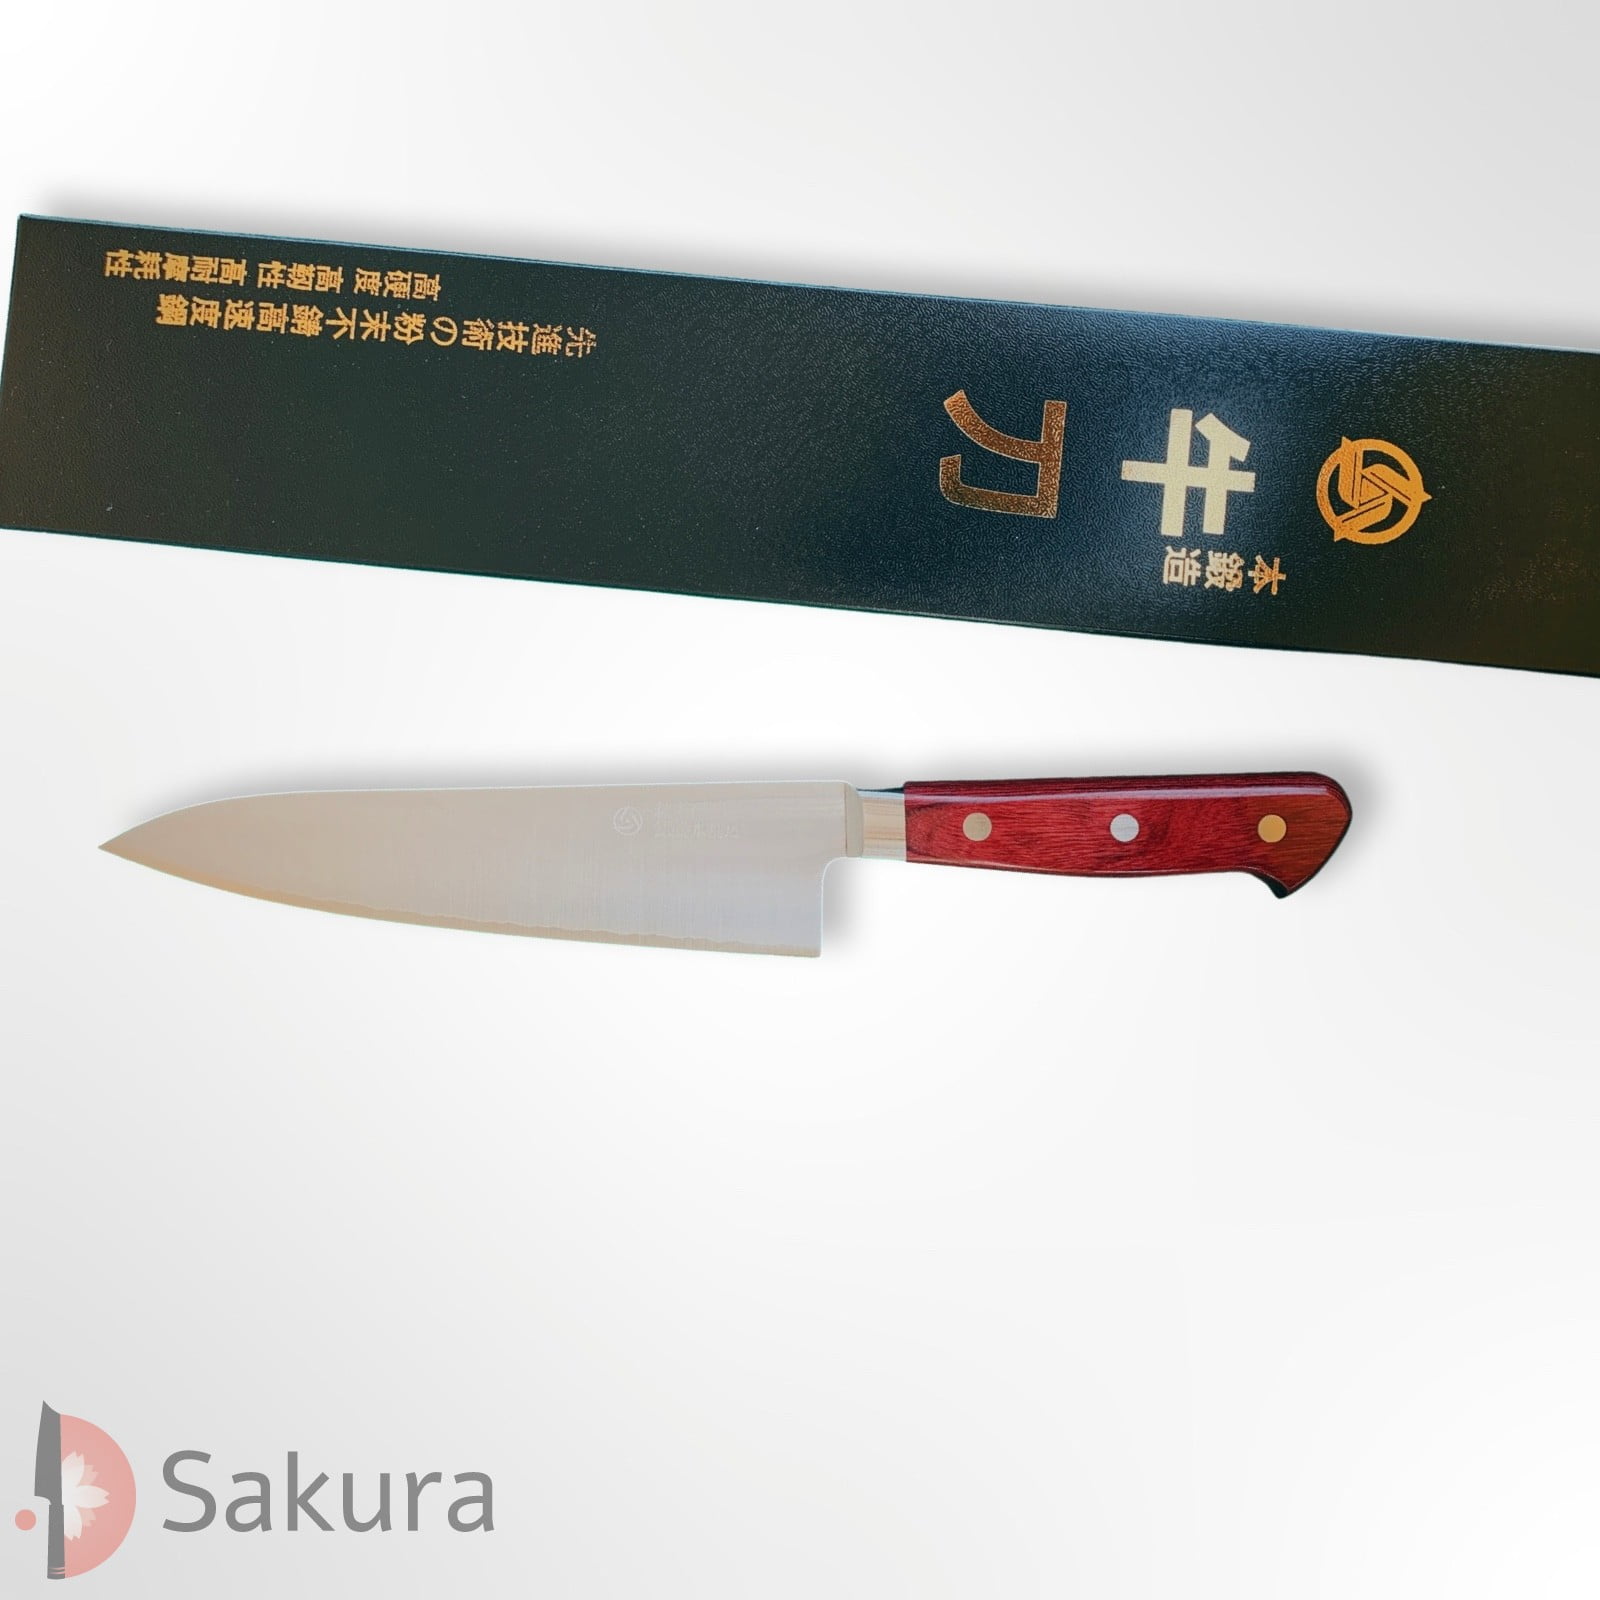 סכין שף רב-תכליתית גִּיוּטוֹ 180מ״מ מחושלת בעבודת יד 3 שכבות: פלדת פחמן יפנית מתקדמת מסוג R2/SG2 עטופה פלדת אל-חלד גימור מט מלוטש טאקאמורה יפן – SKTKMTKTK4343